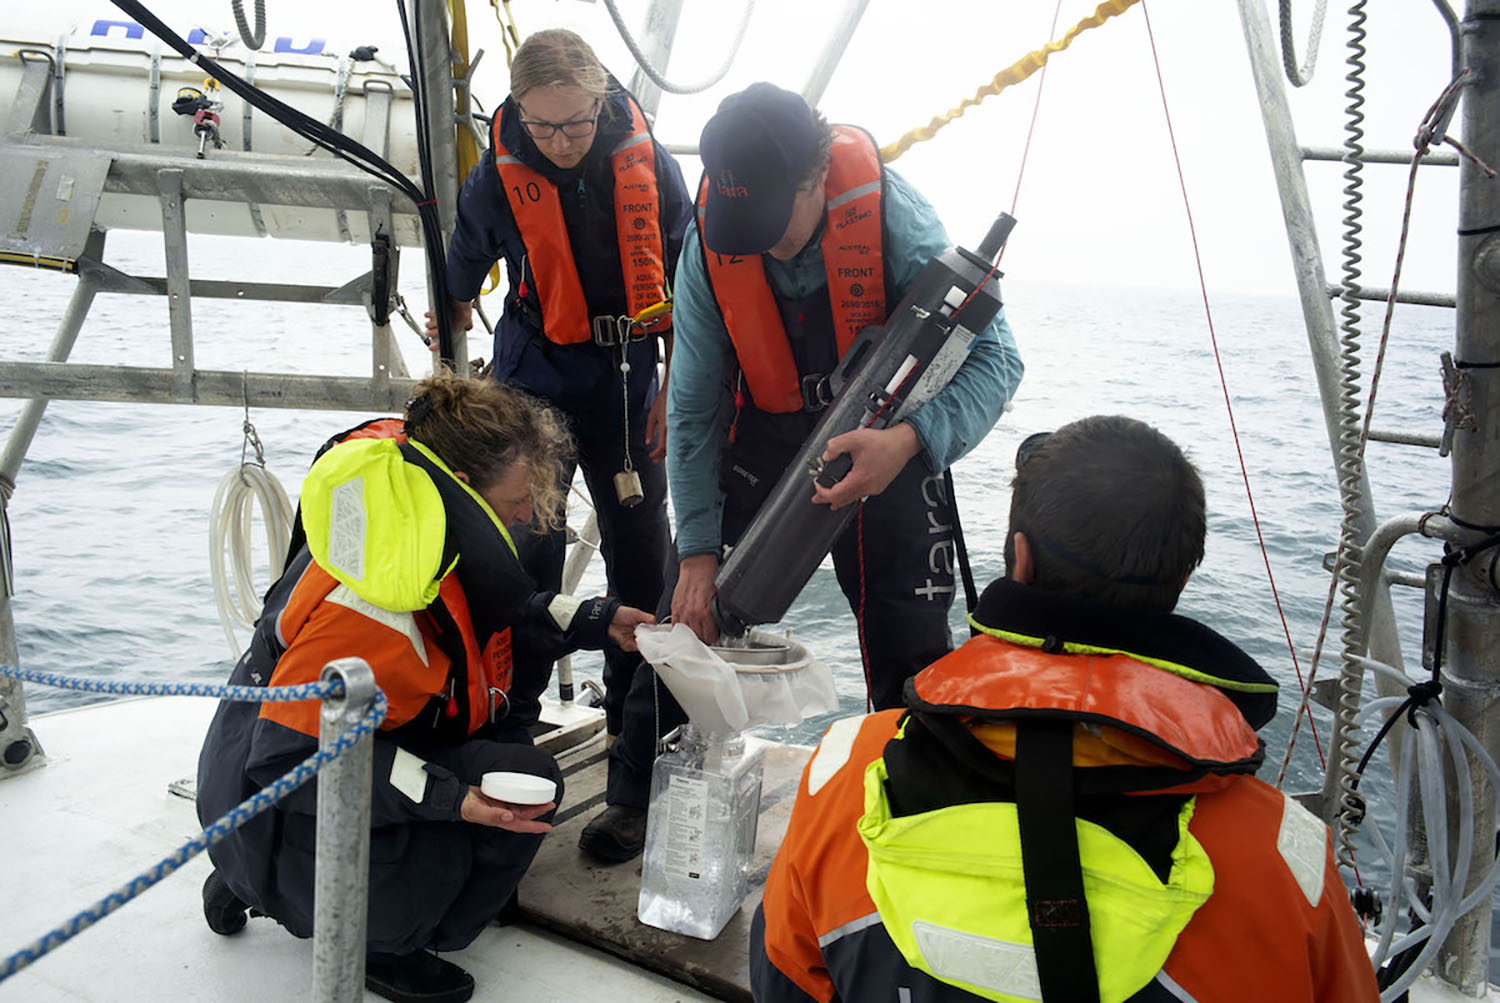 L’équipe scientifique à bord avec le niskin, un instrument de prélèvements de l’eau de mer à différentes profondeurs ©Samuel Bollendorff